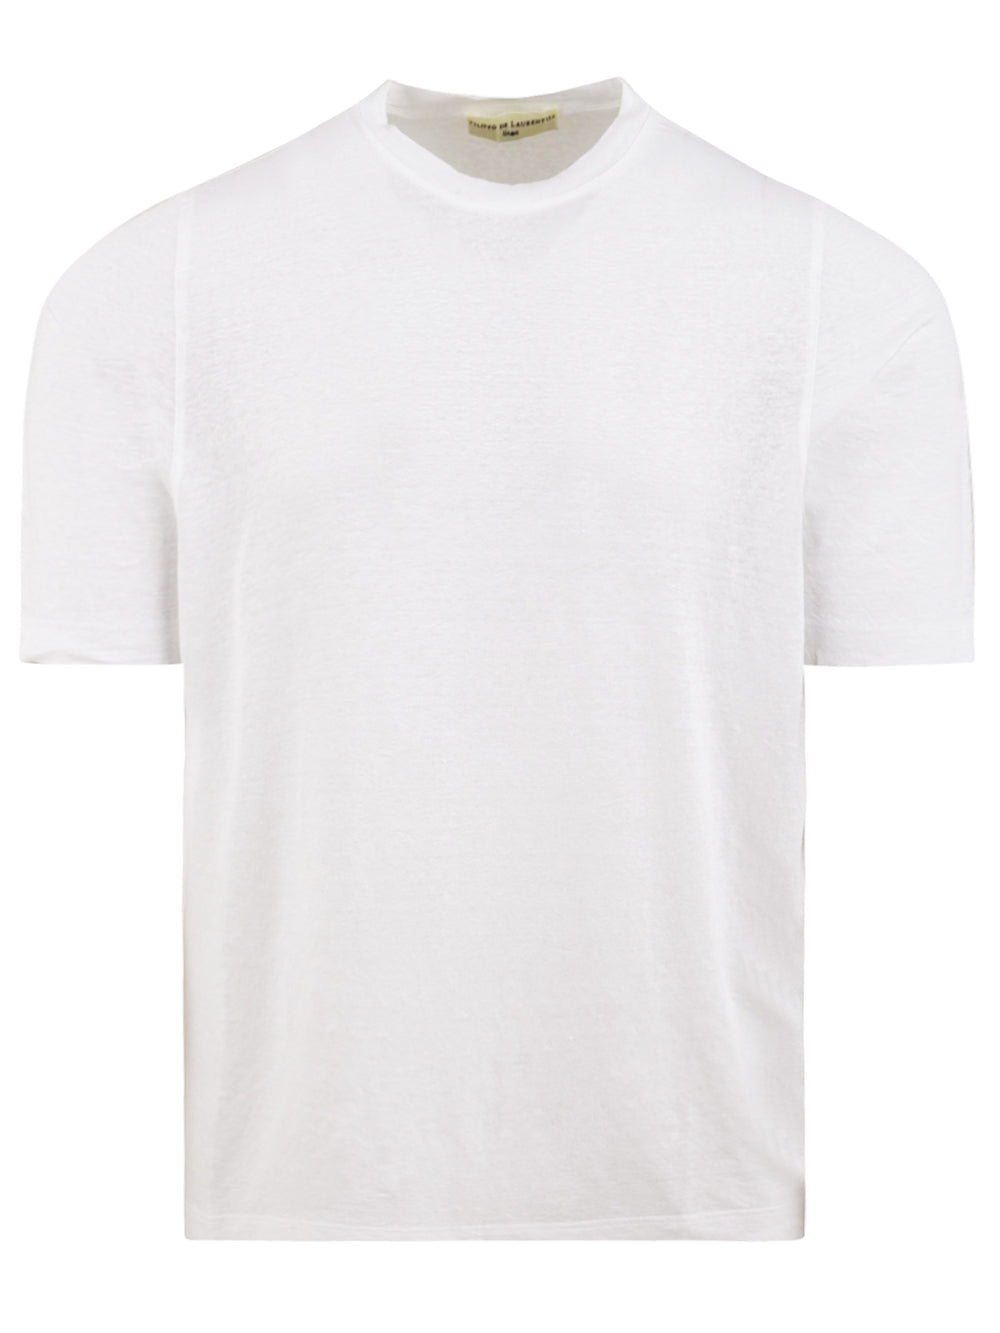 T-shirt blanc optique